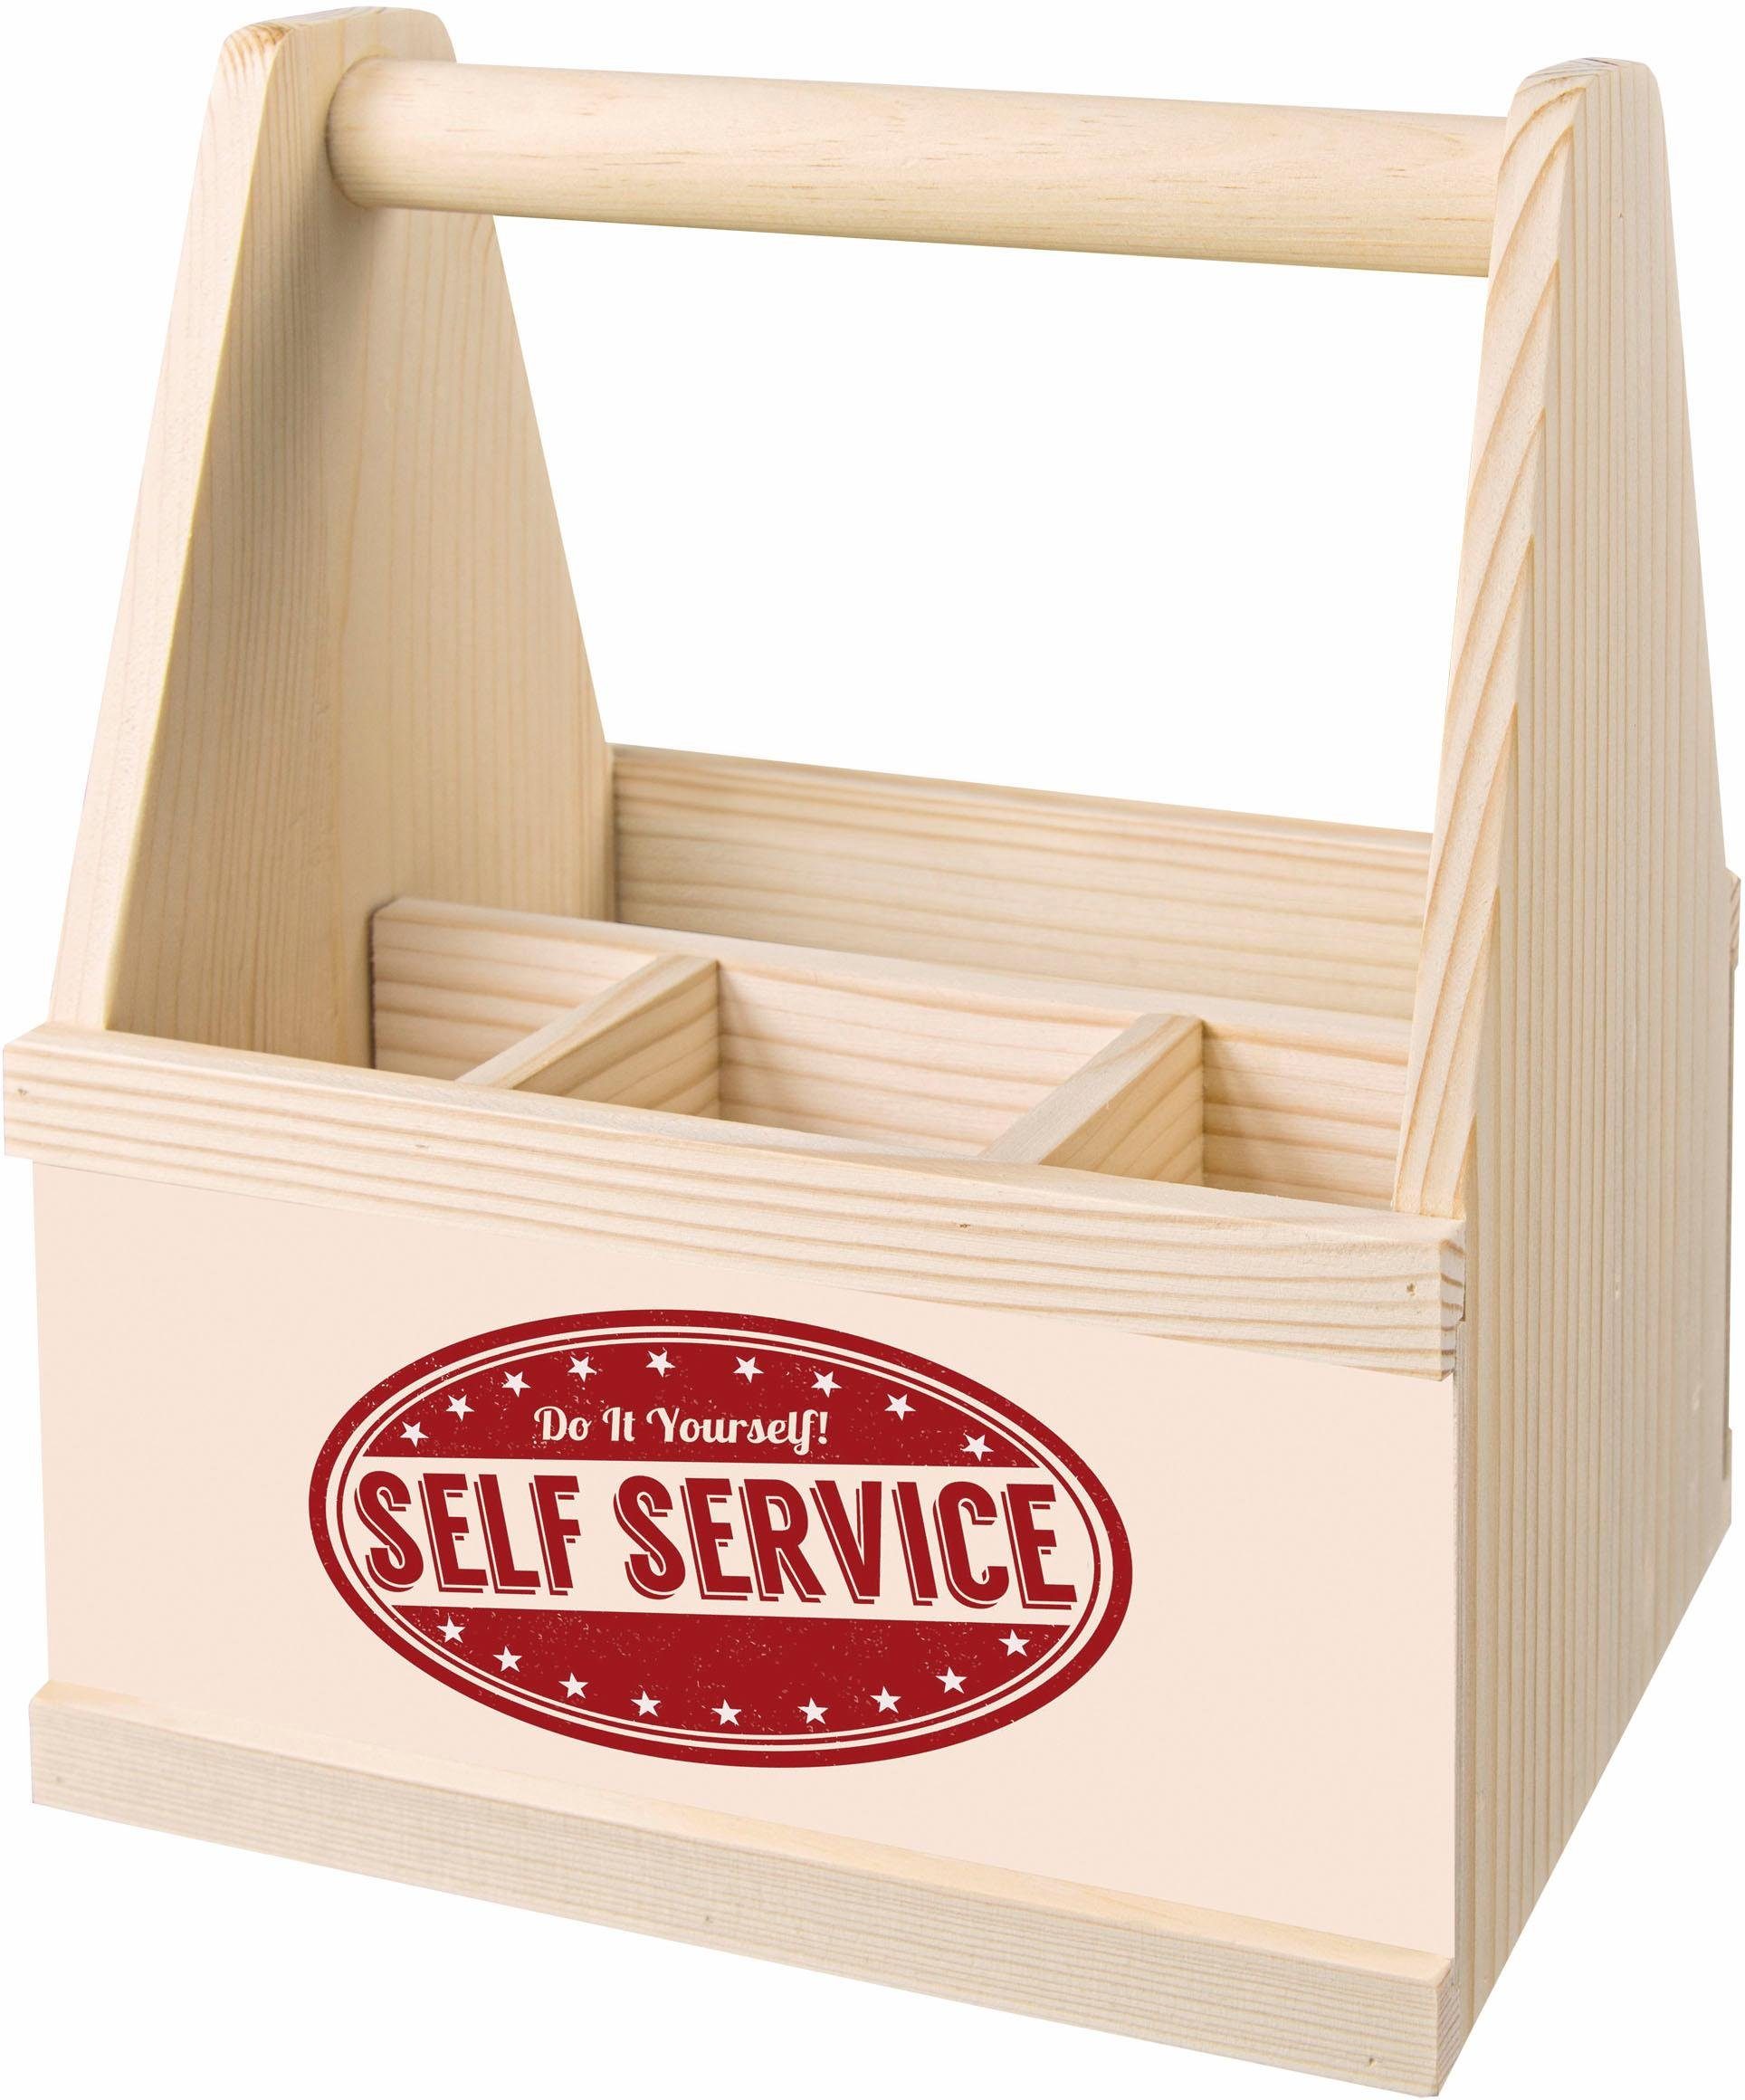 Contento Besteckträger »Self Service«, Besteck-Behälter online kaufen | OTTO